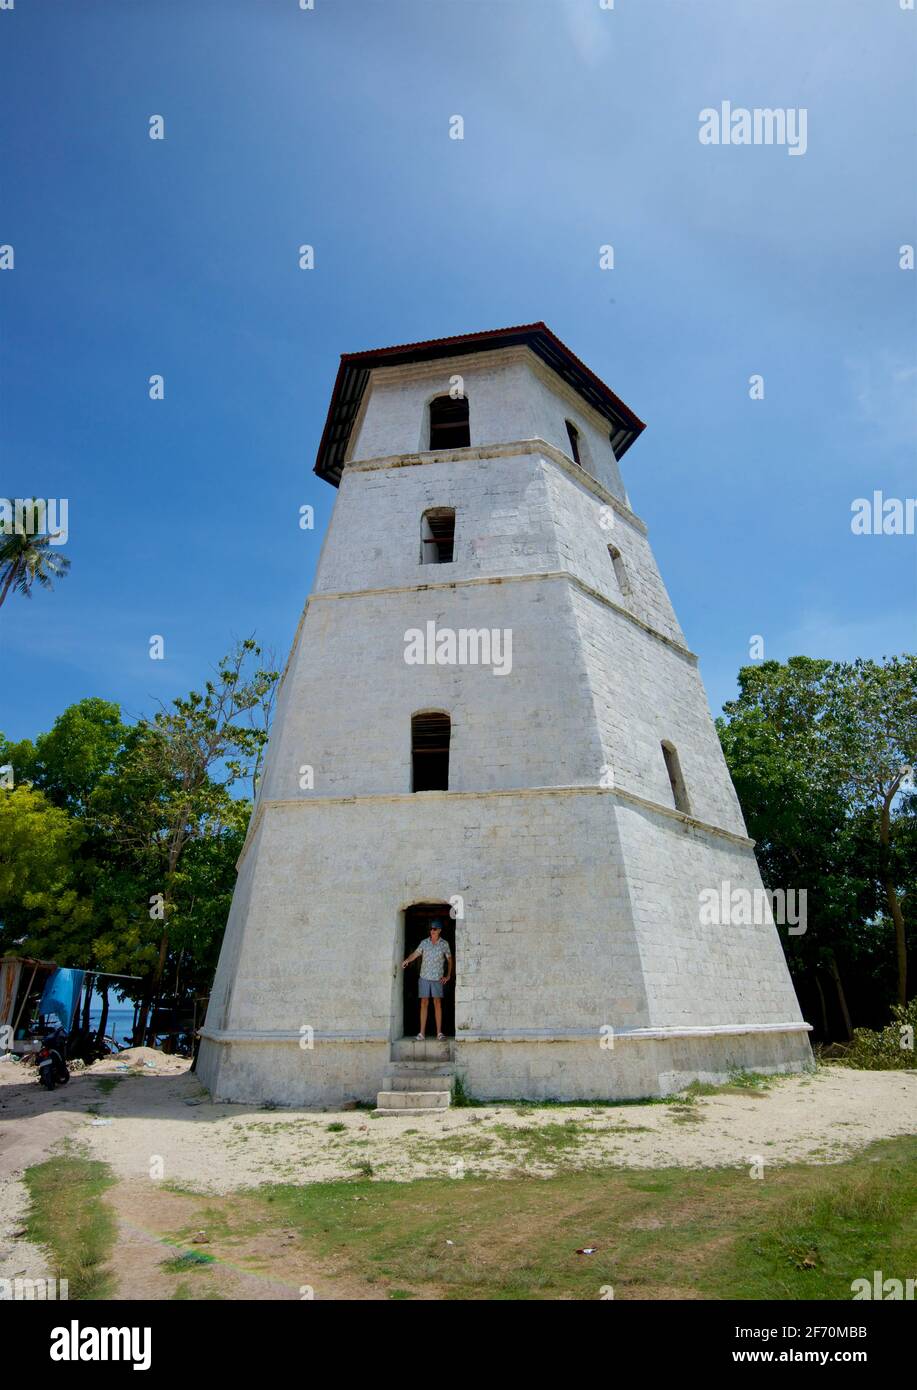 La torre campanaria o torre di guardia restaurata sull'isola di Panglao, Bohol, Filippine. Dietro la chiesa parrocchiale di Sant'Agostino, la torre esagonale a 1851 piani è considerata la più alta del suo genere nelle Filippine Foto Stock